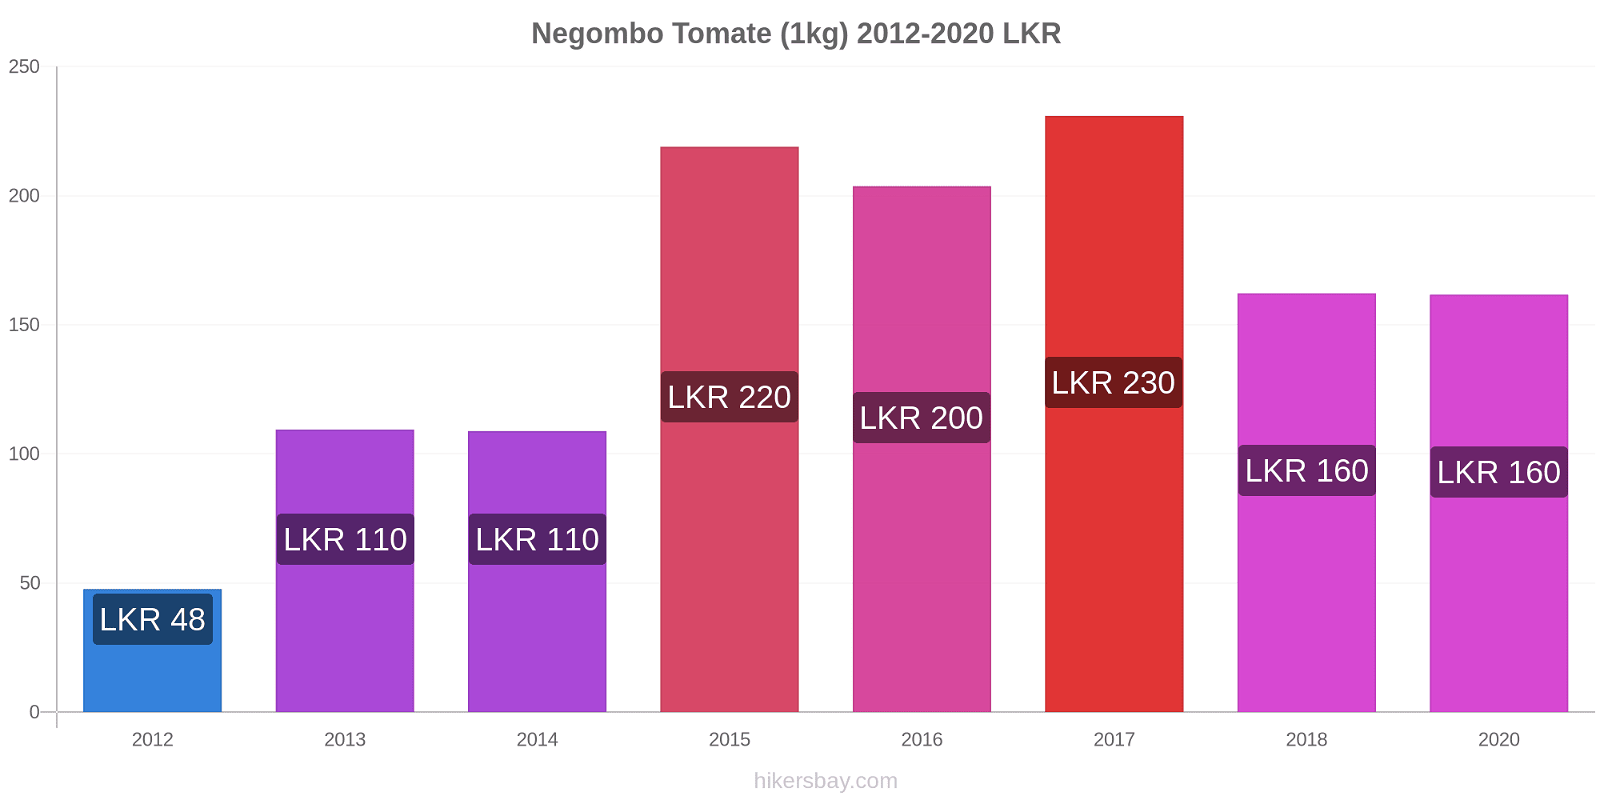 Negombo variação de preço Tomate (1kg) hikersbay.com